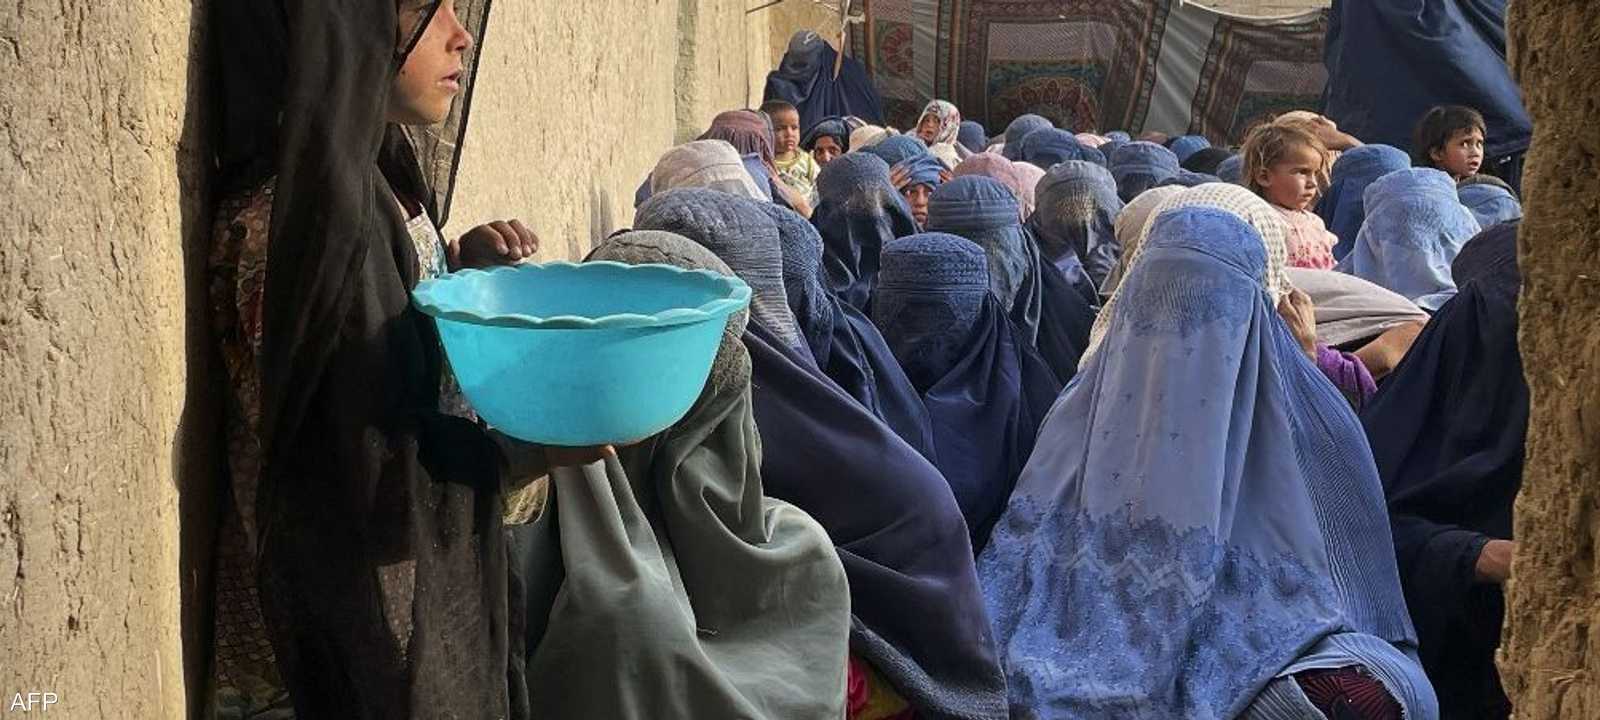 رغم الدعم لا يزال كثير من الأفغان يعانون نقص الأغذية..أرشيف